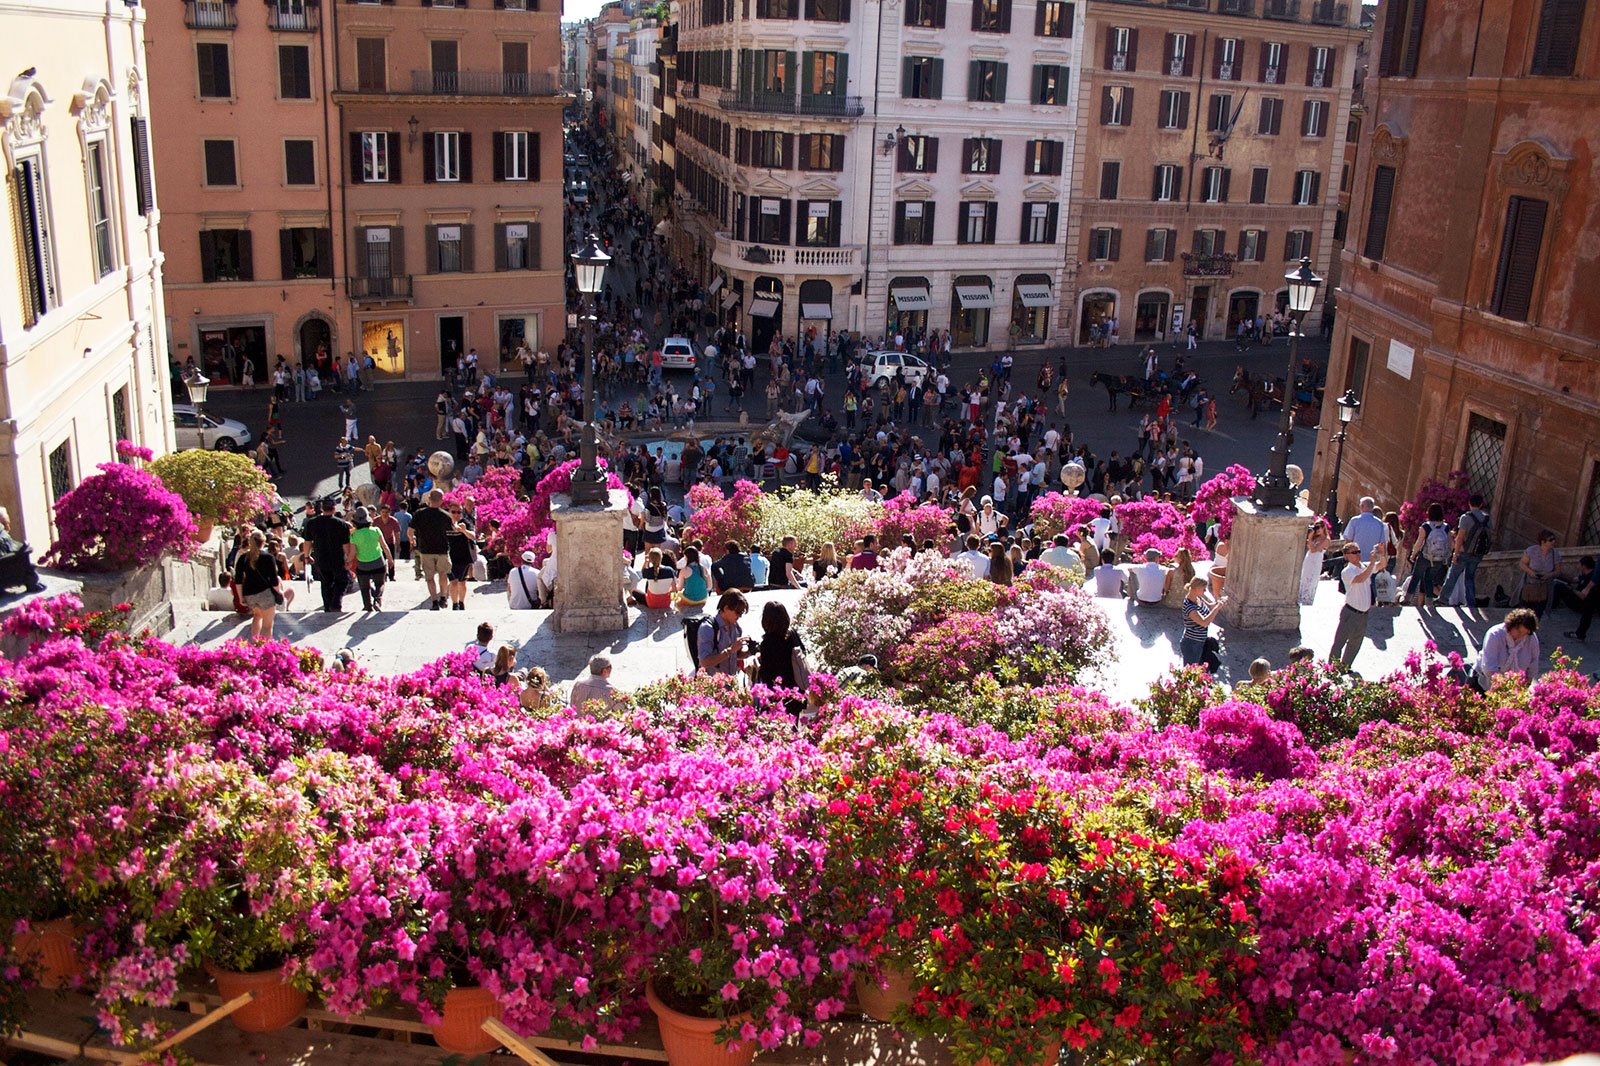 How to see the Festa della Primavera in Rome